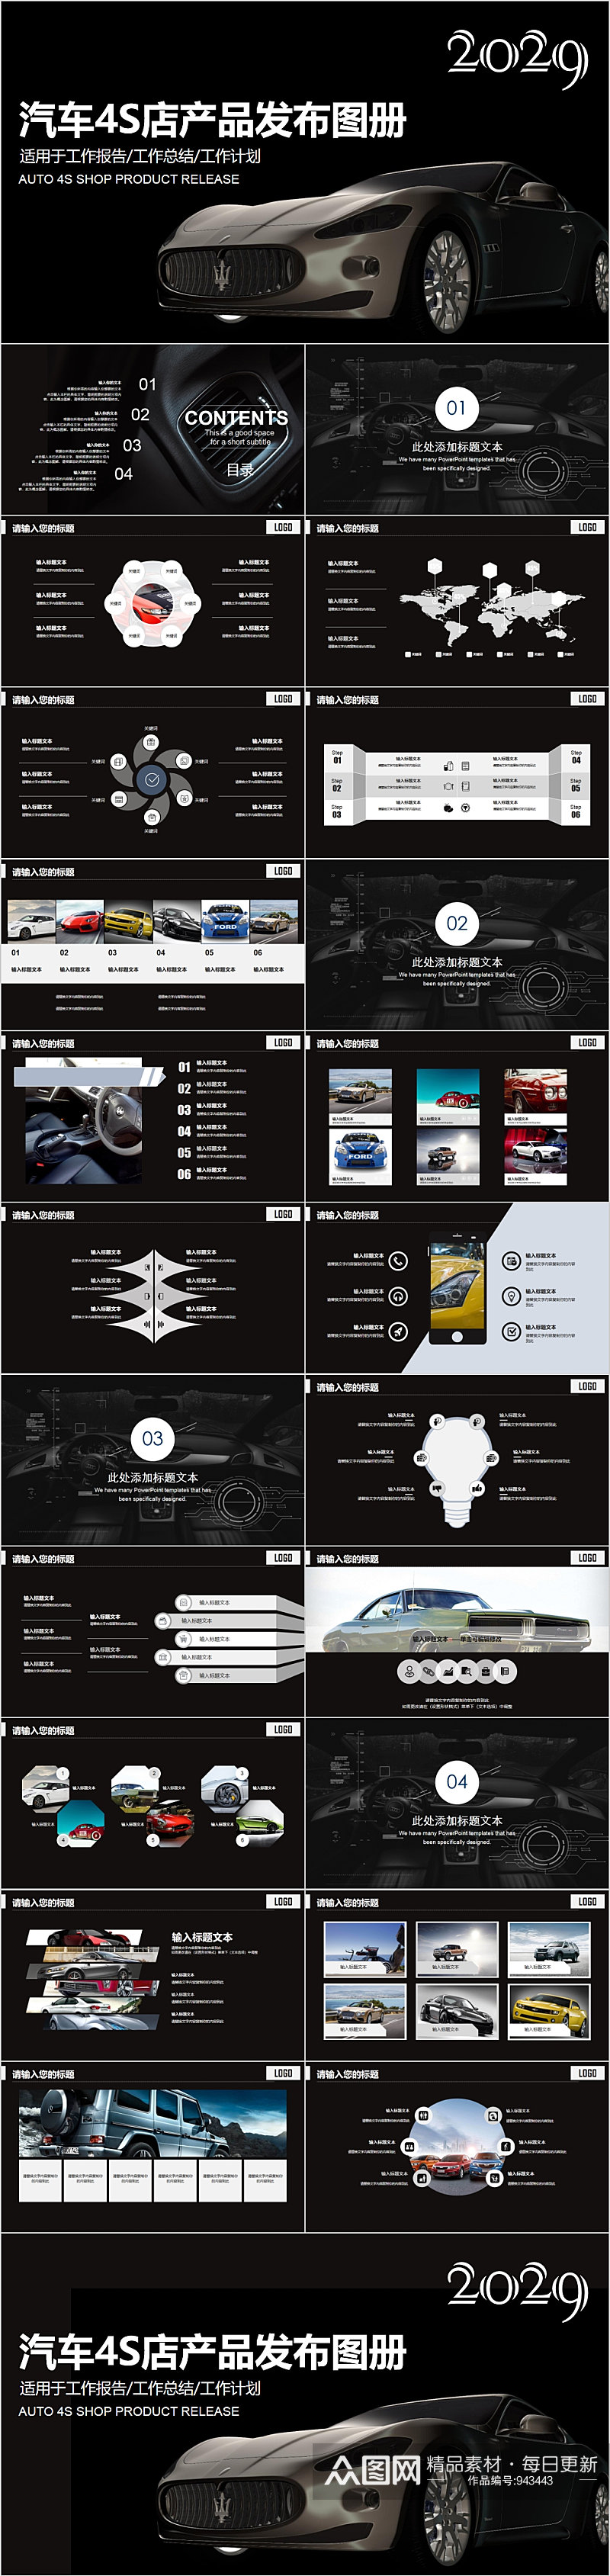 汽车4S店产品发布图册PPT素材